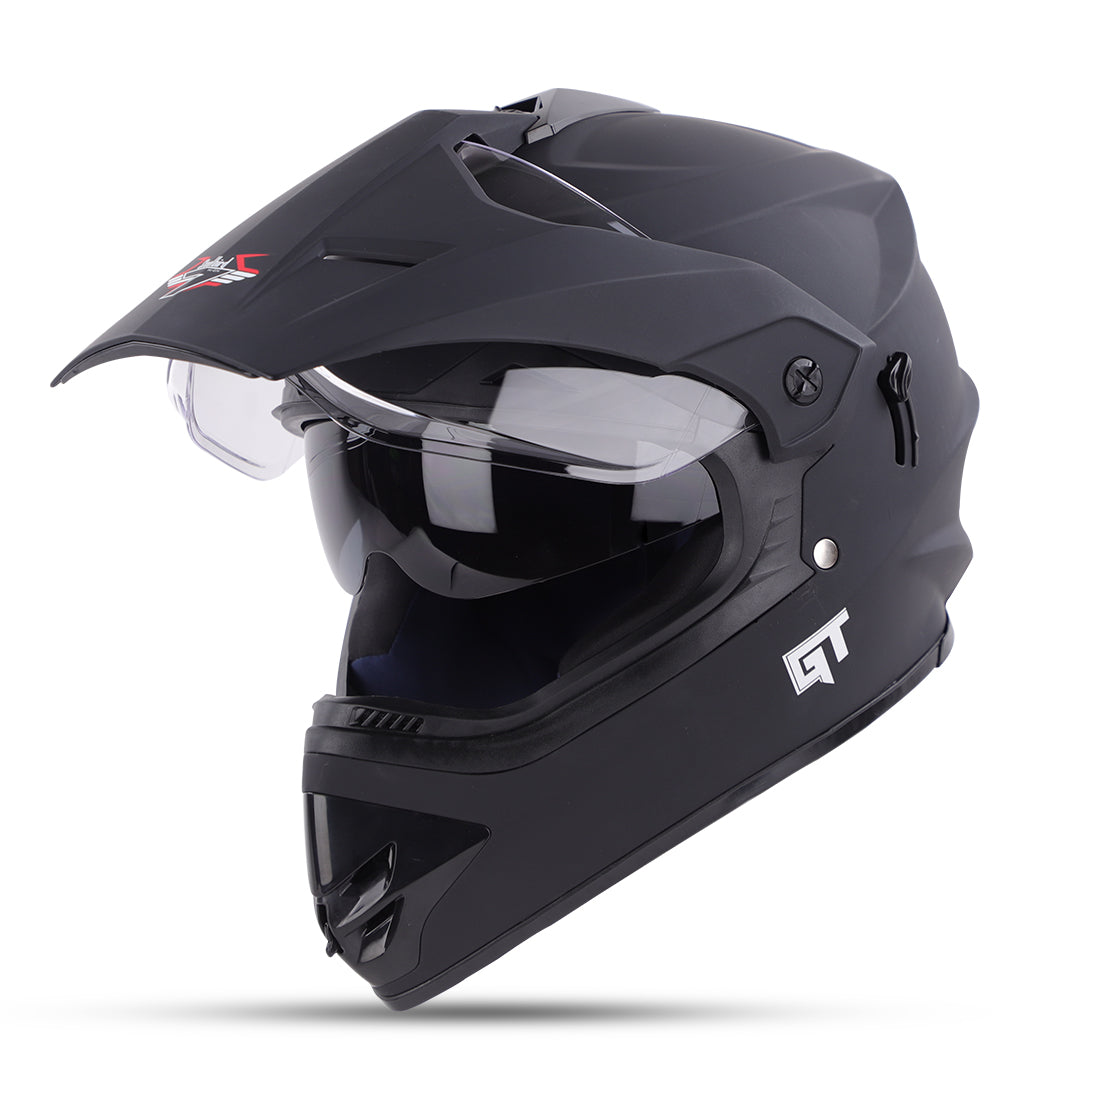 Steelbird GT Off Road ISI Certified Motocross Double Visor Full Face Helmet Outer Clear Visor and Inner Smoke Sun Shield (Matt Black)